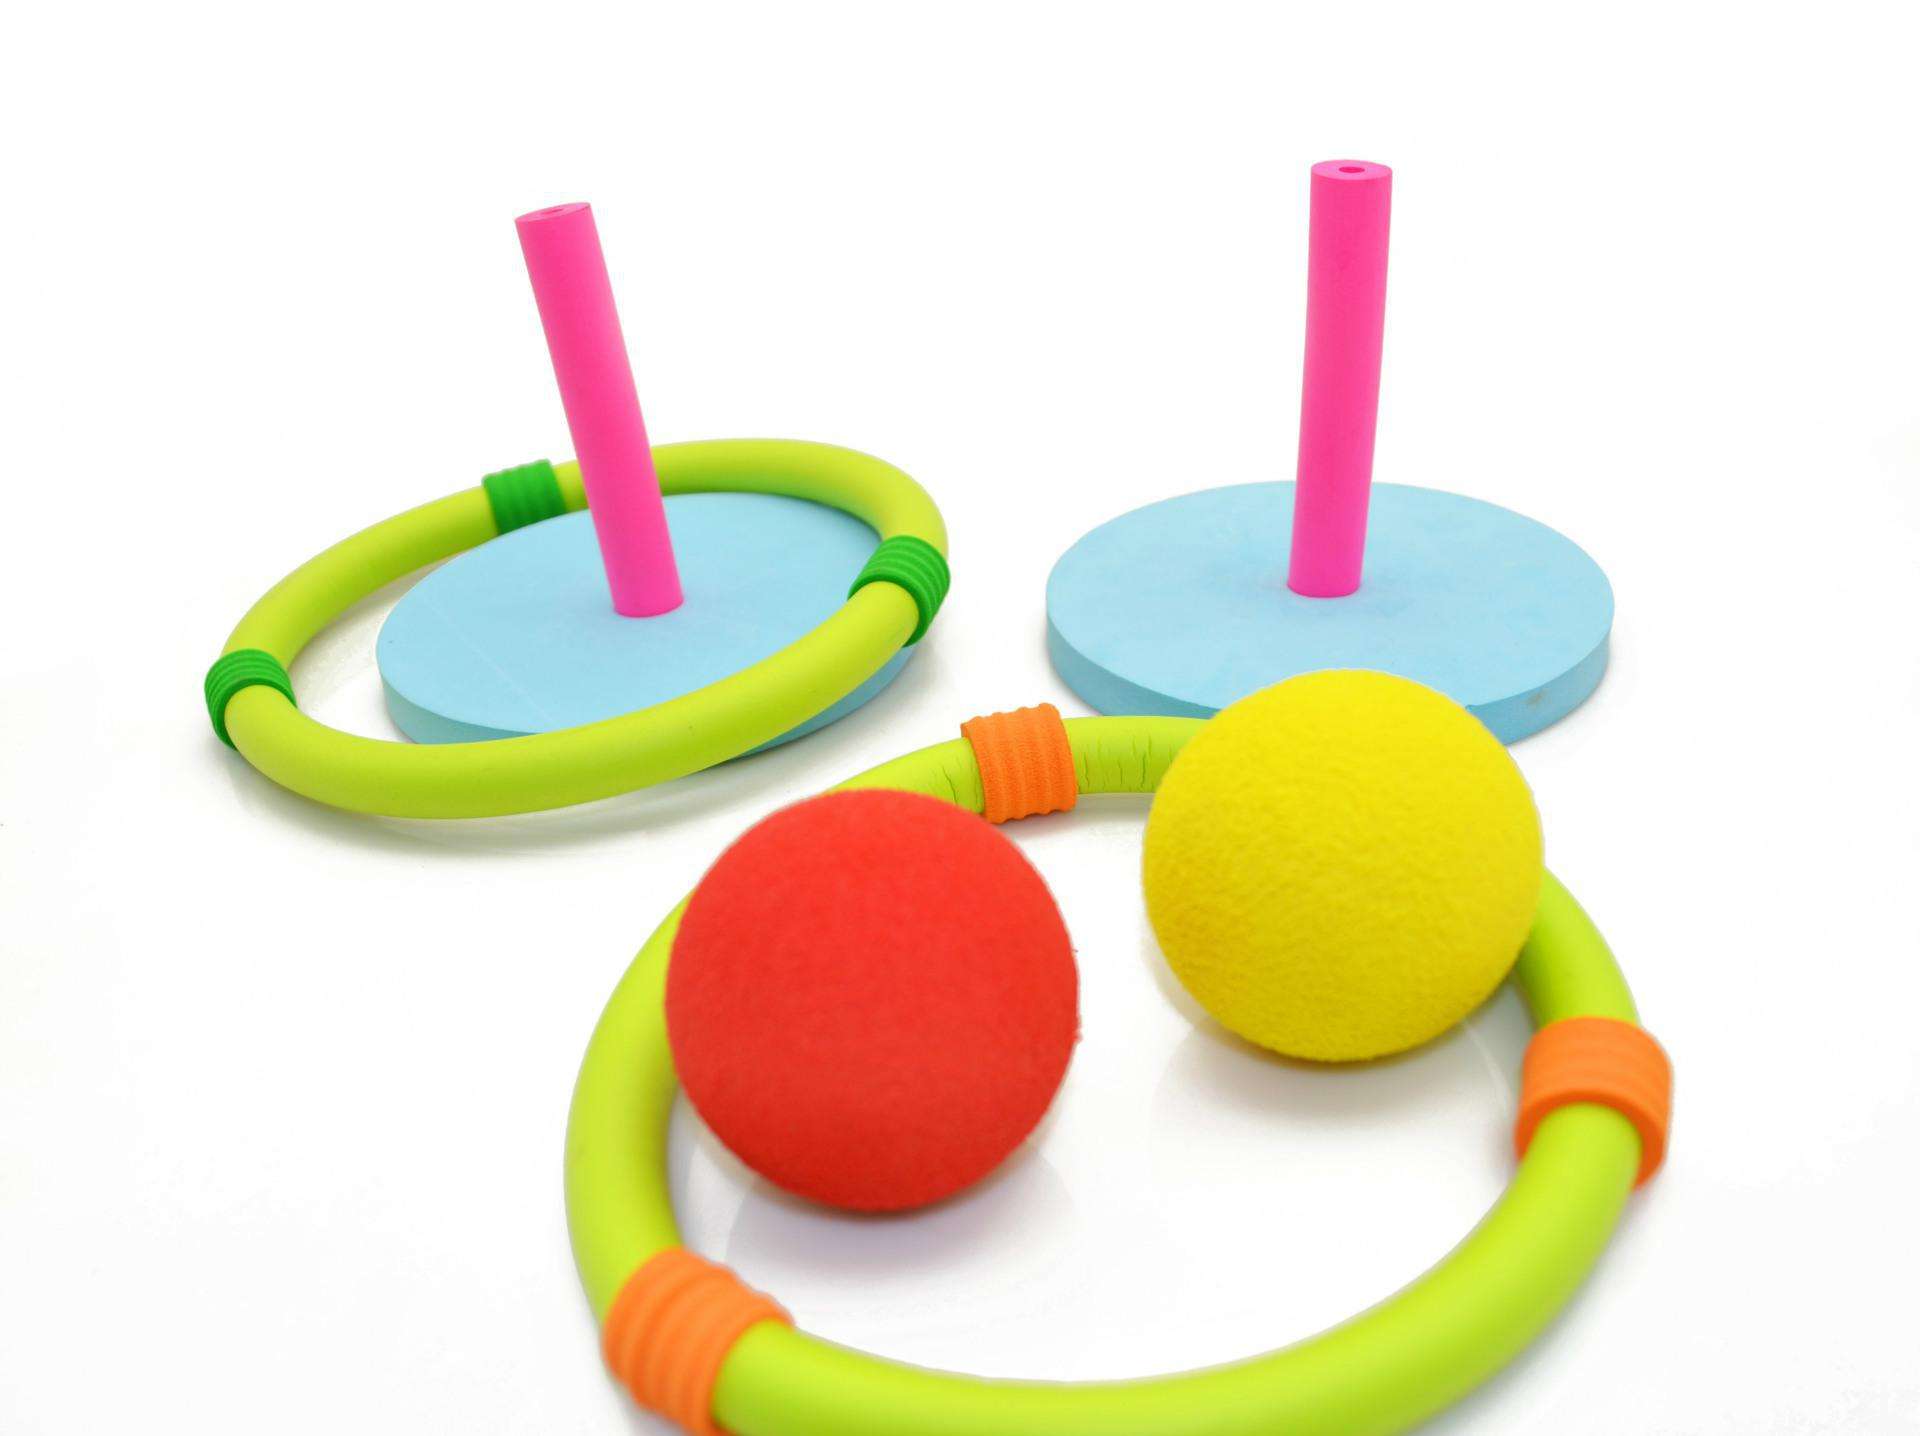 投掷圈投掷圈  圈圈乐儿童玩具 亲子室内外互动玩具幼儿园开发孩子大脑和身体协调重要早教器材